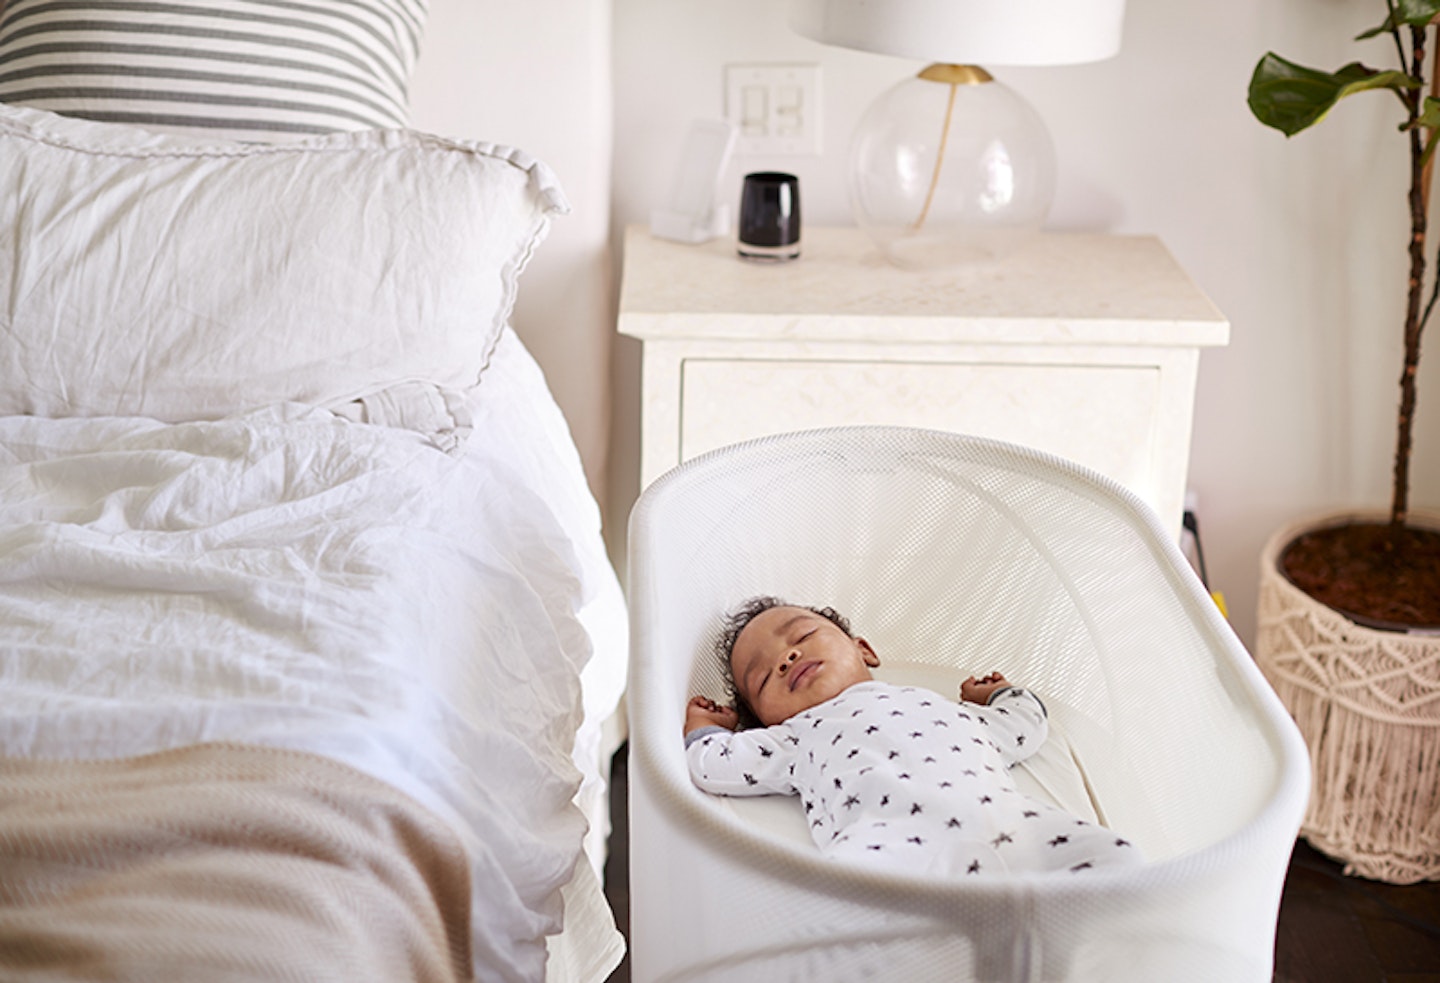 Best Baby Sleep Practices: Room Temperature